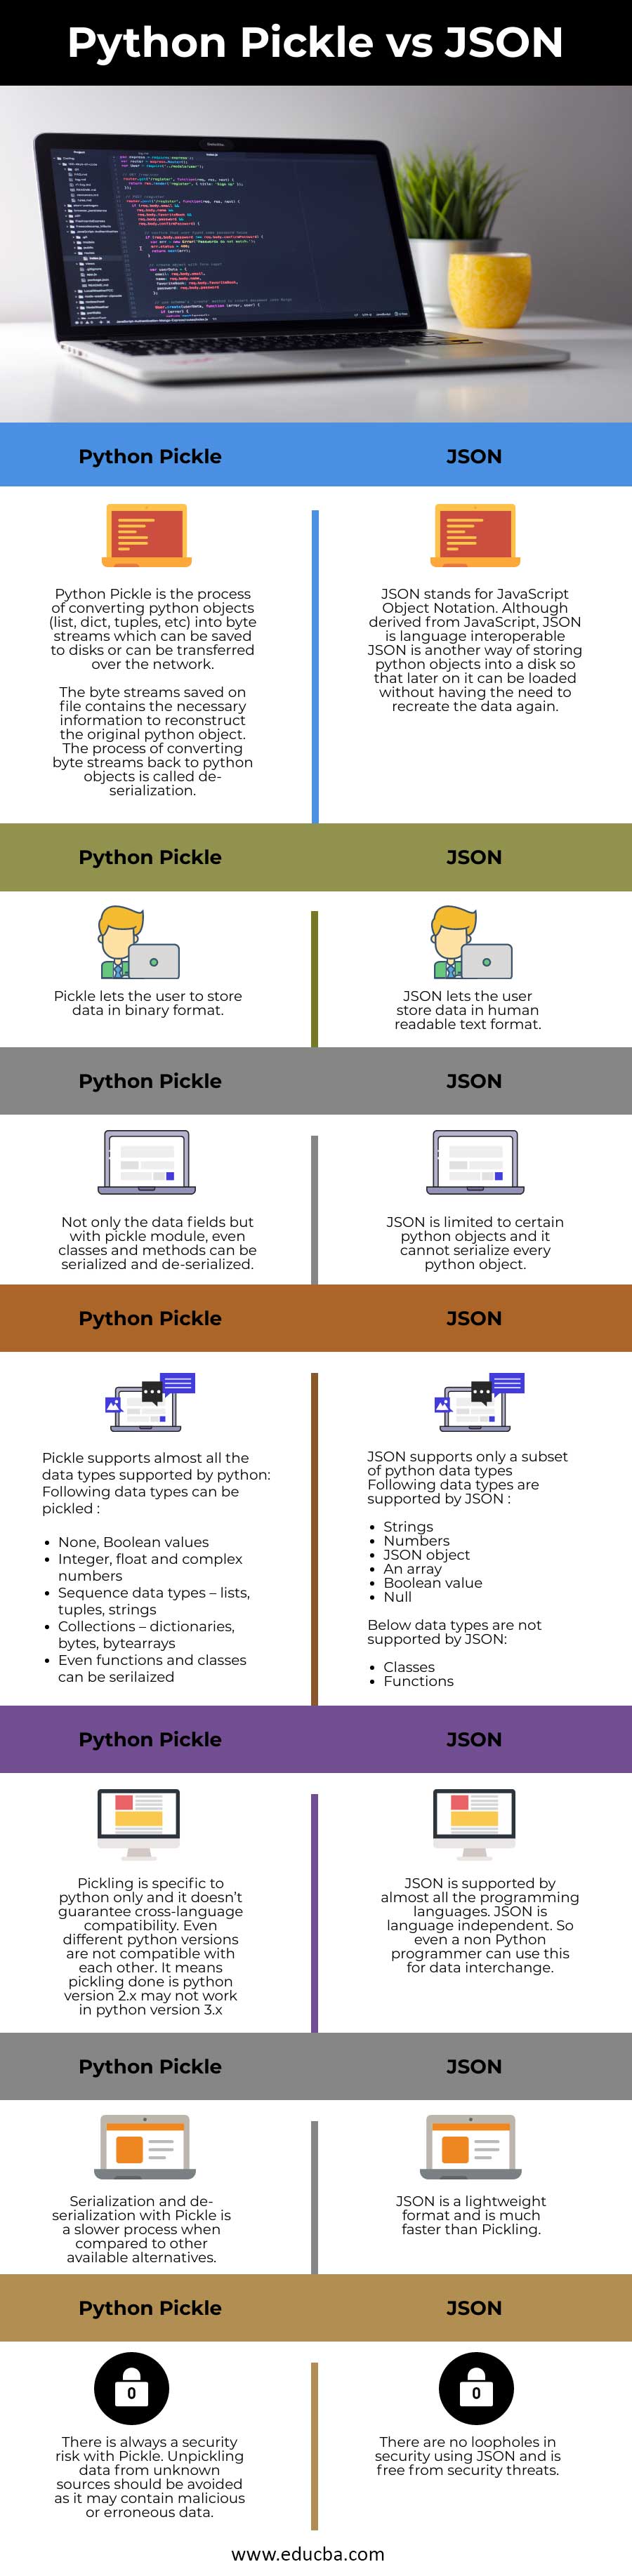 Python-Pickle-vs-JSON-info